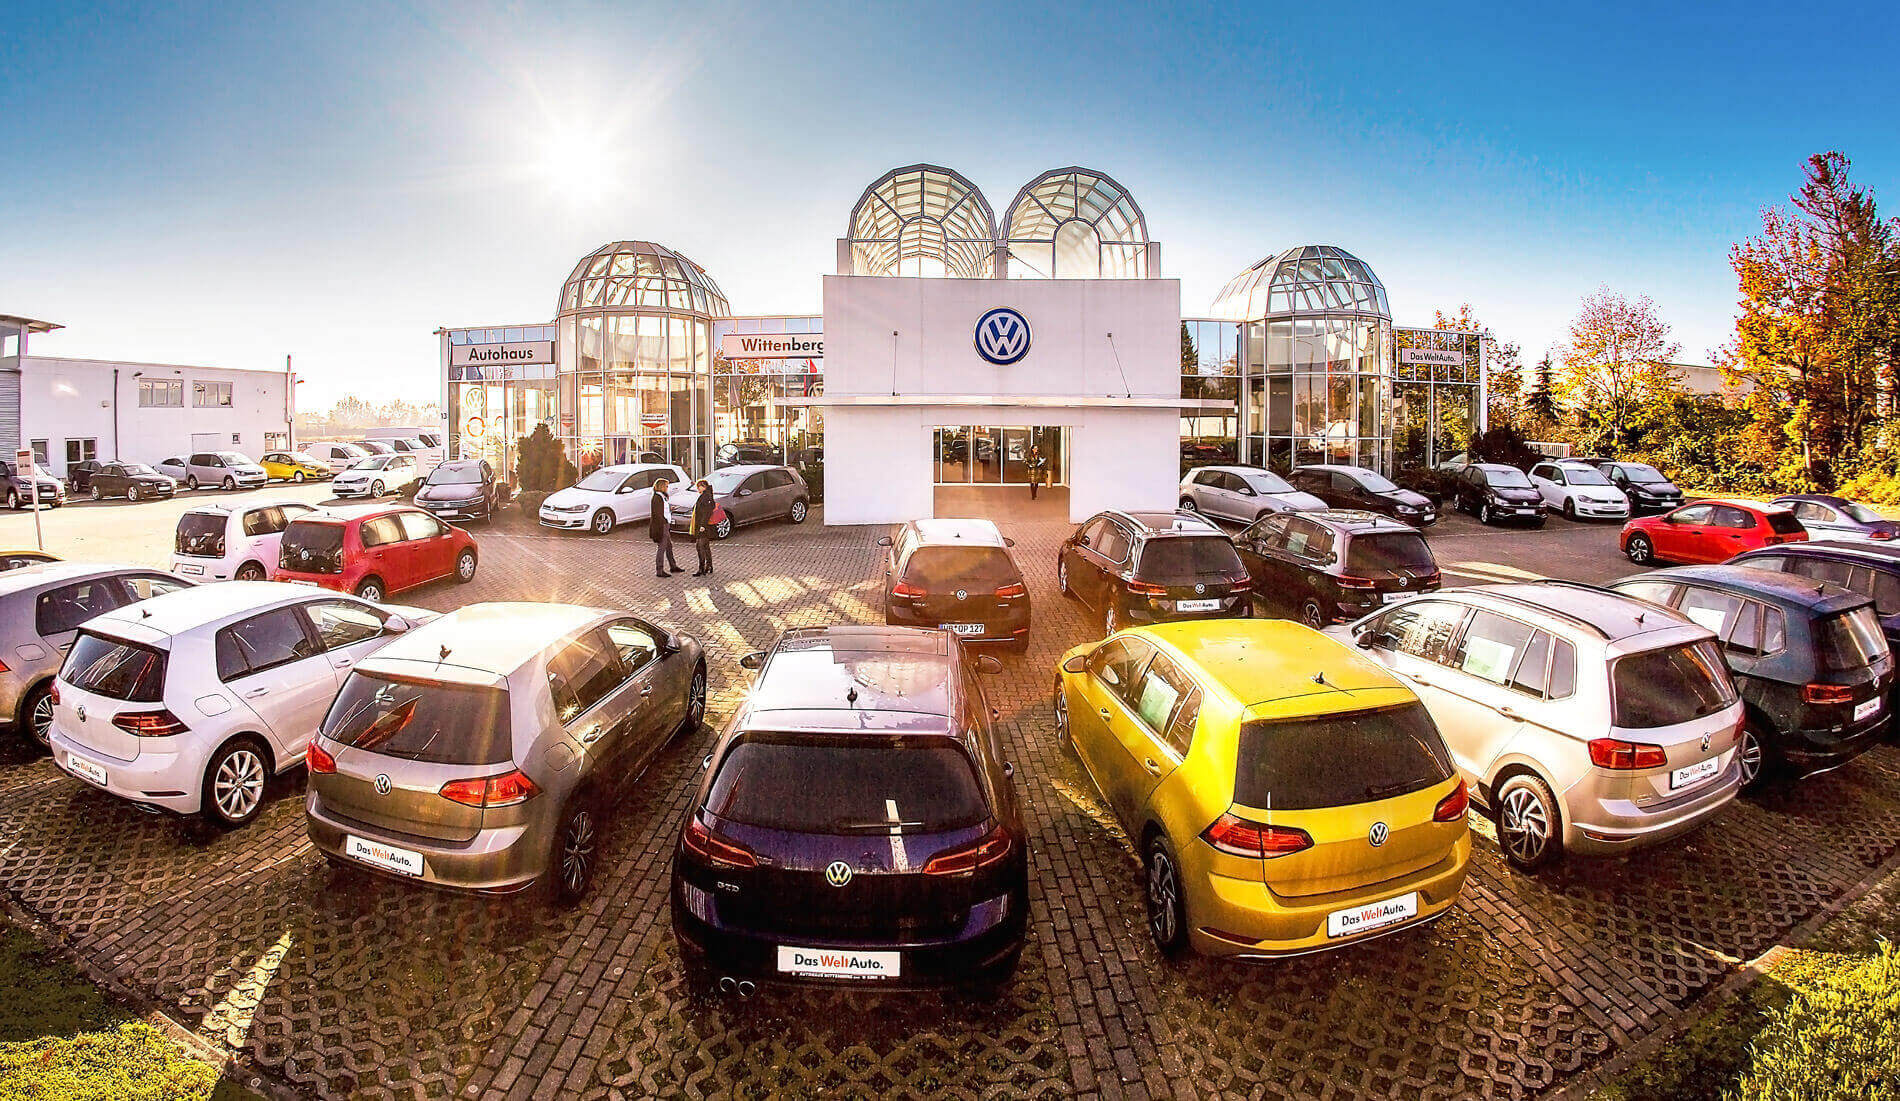 Volkswagen Service Partner in Wittenberg